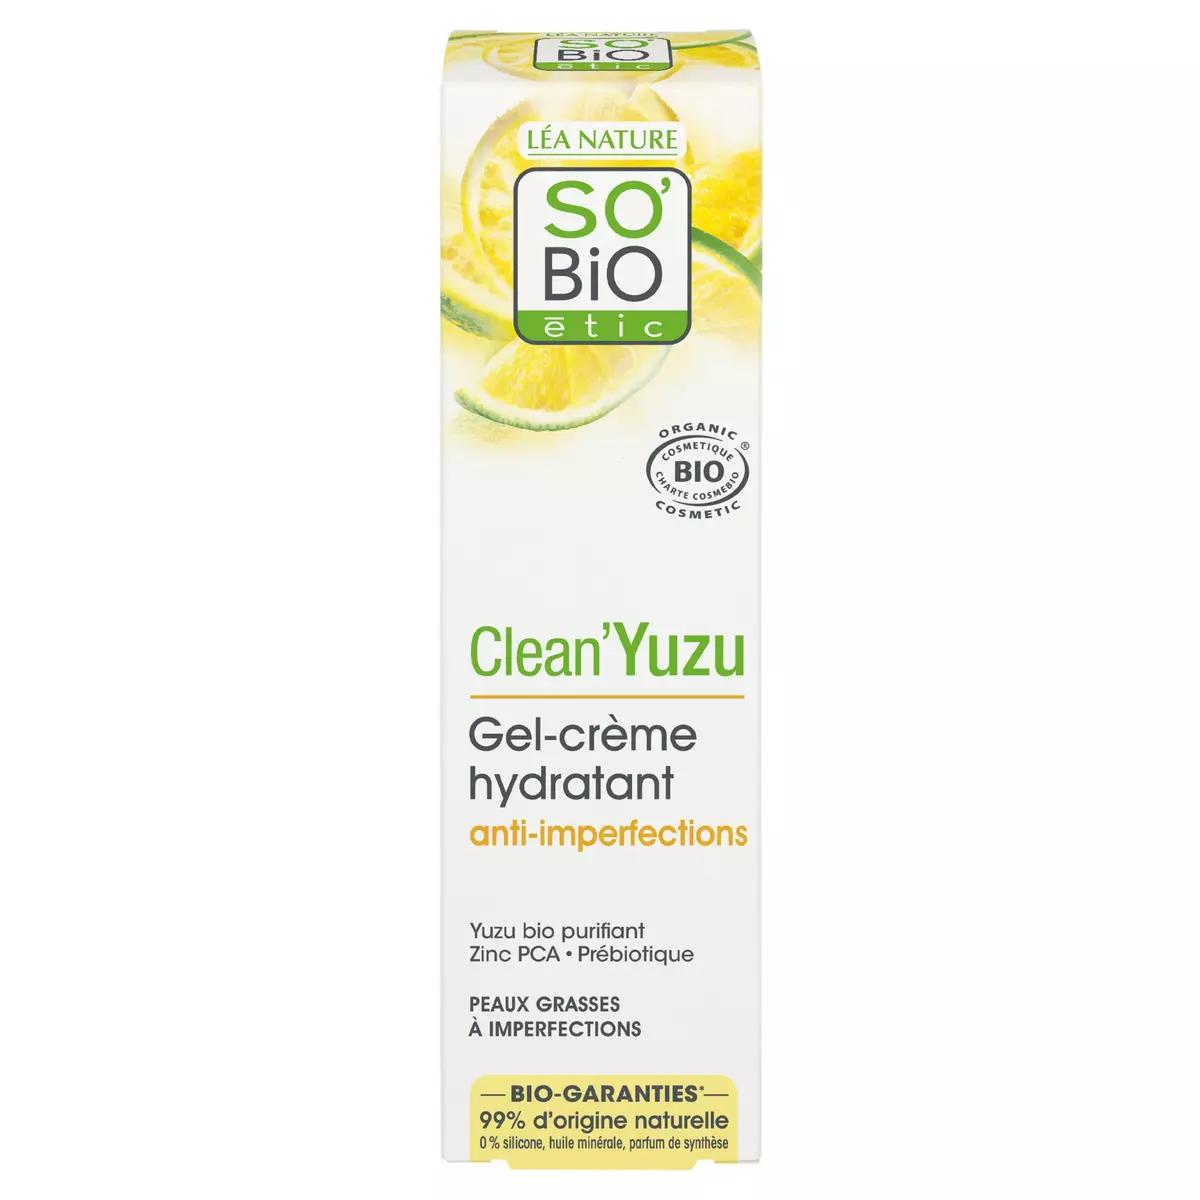 SO BIO ETIC Gel crème hydratant anti-imperfection yuzu 40ml